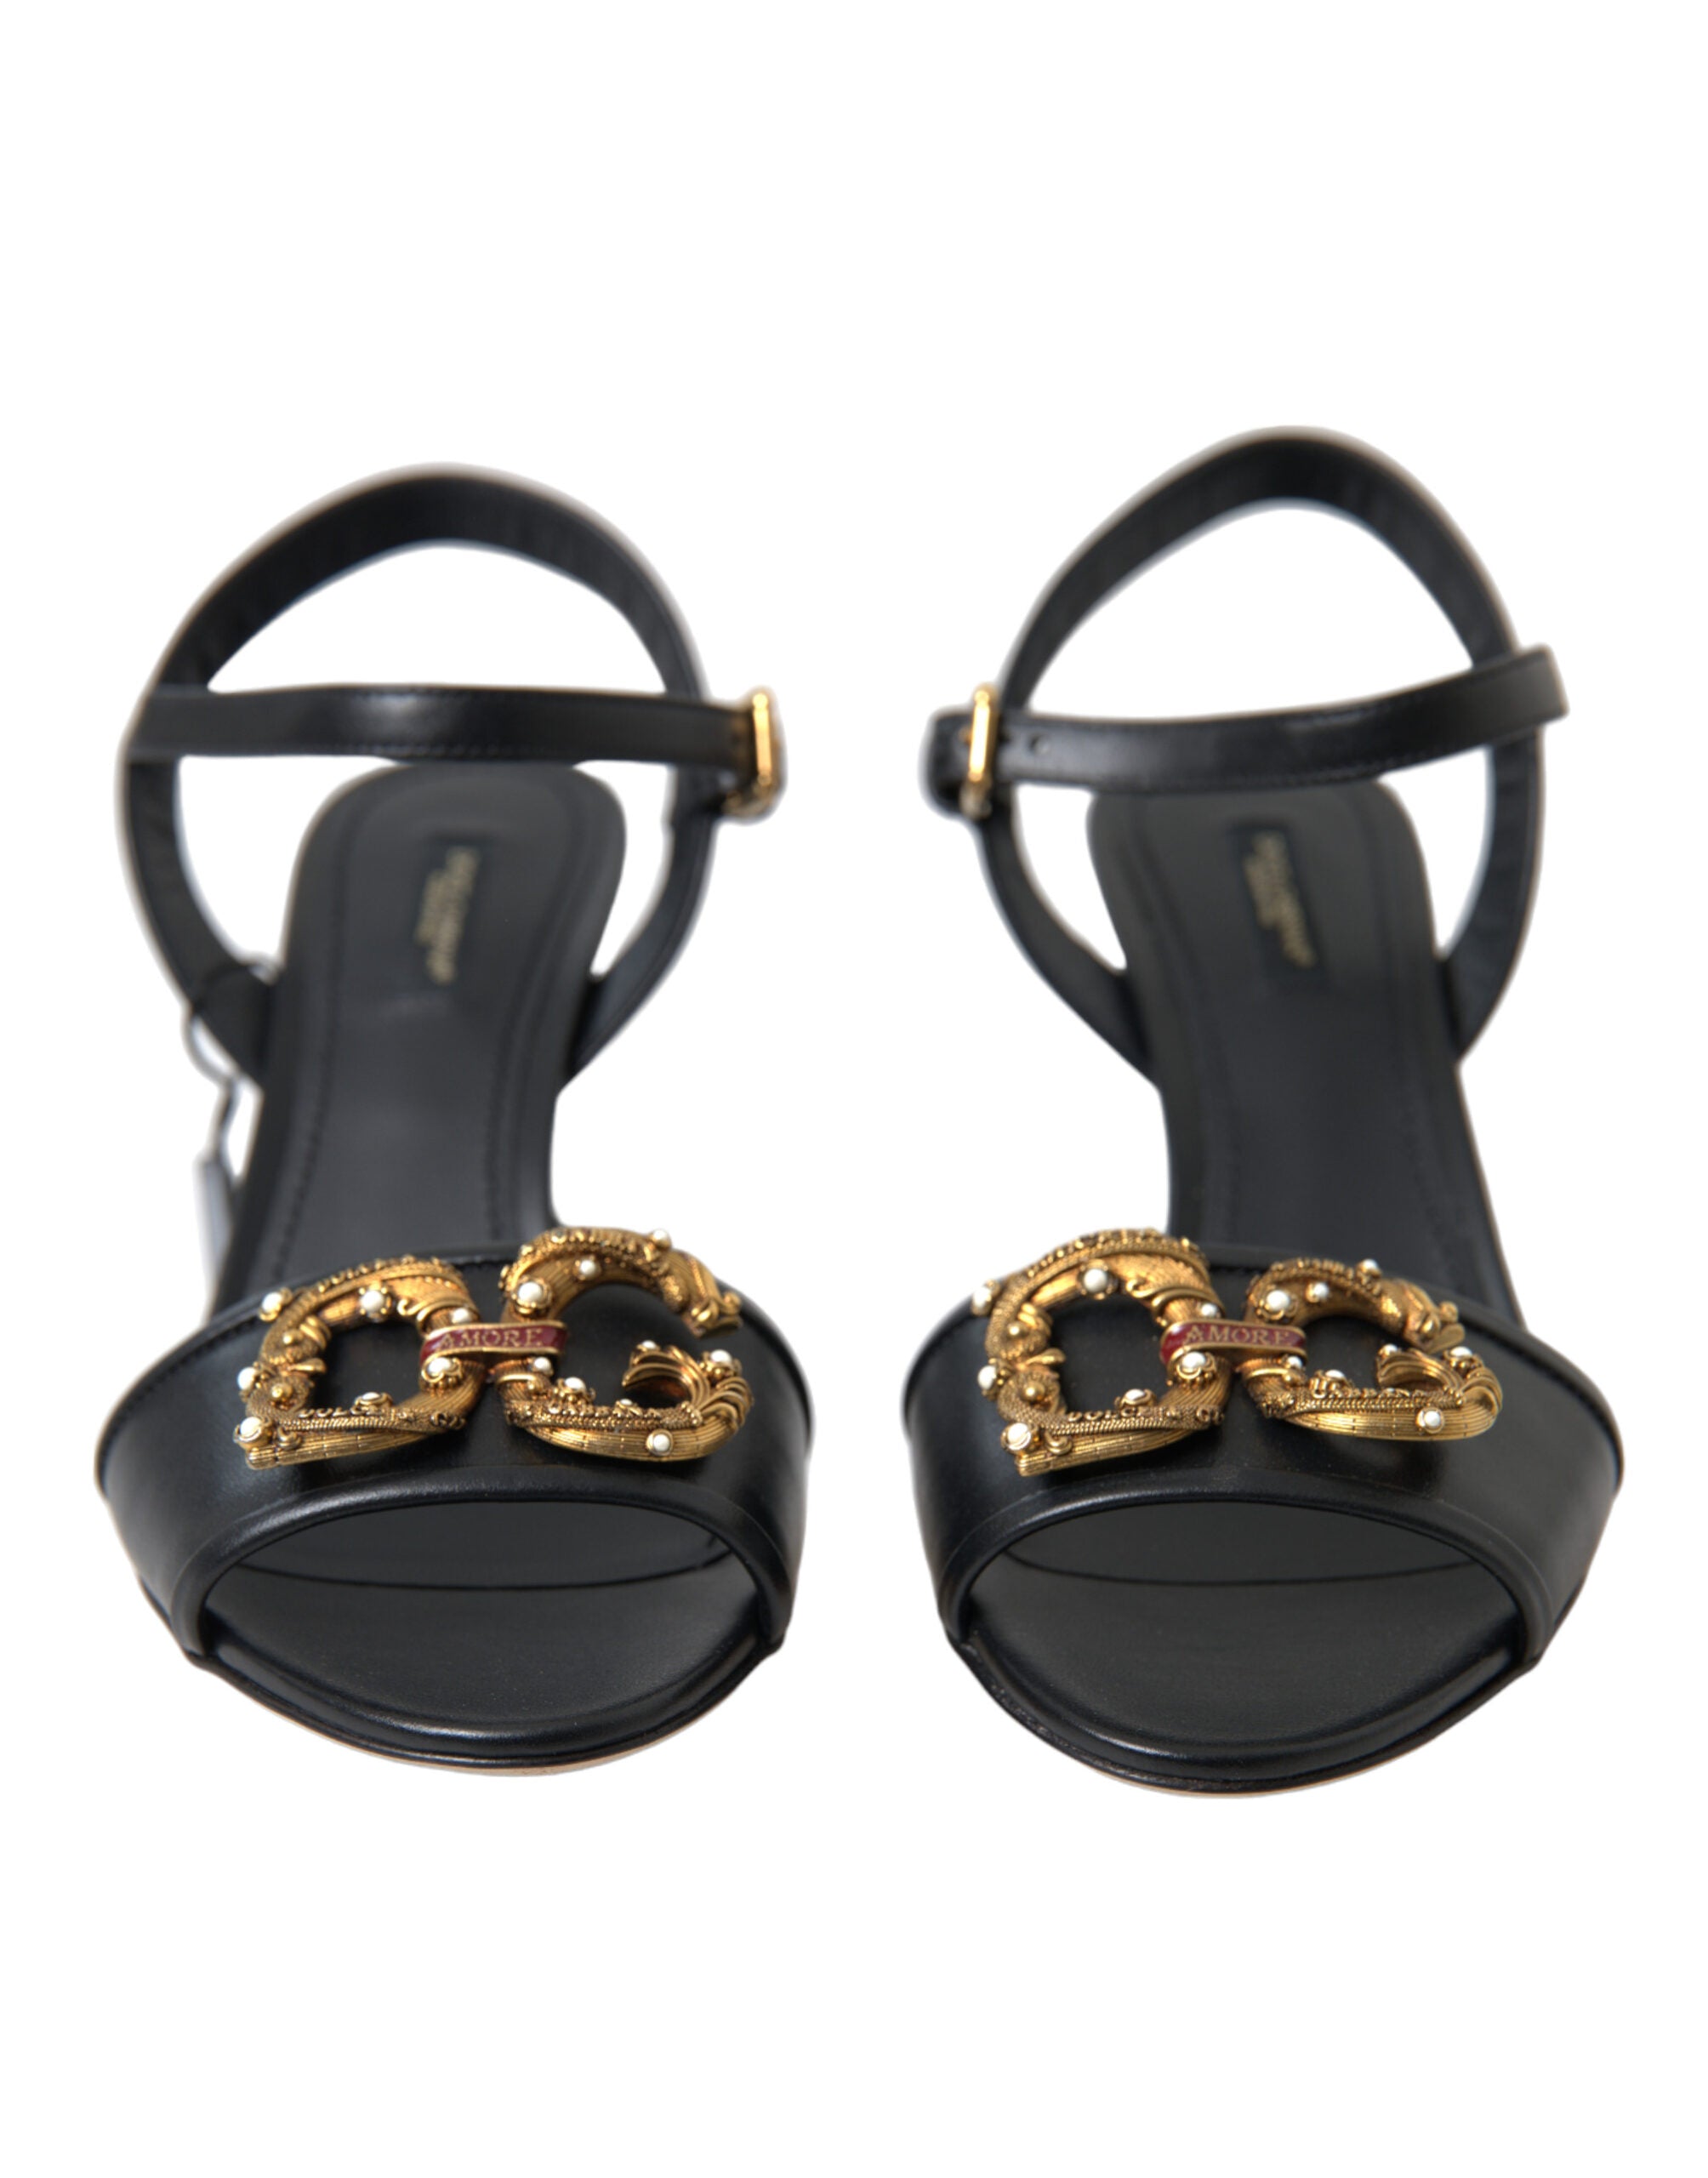 Dolce & Gabbana Elegant Black Leather Heels Sandals